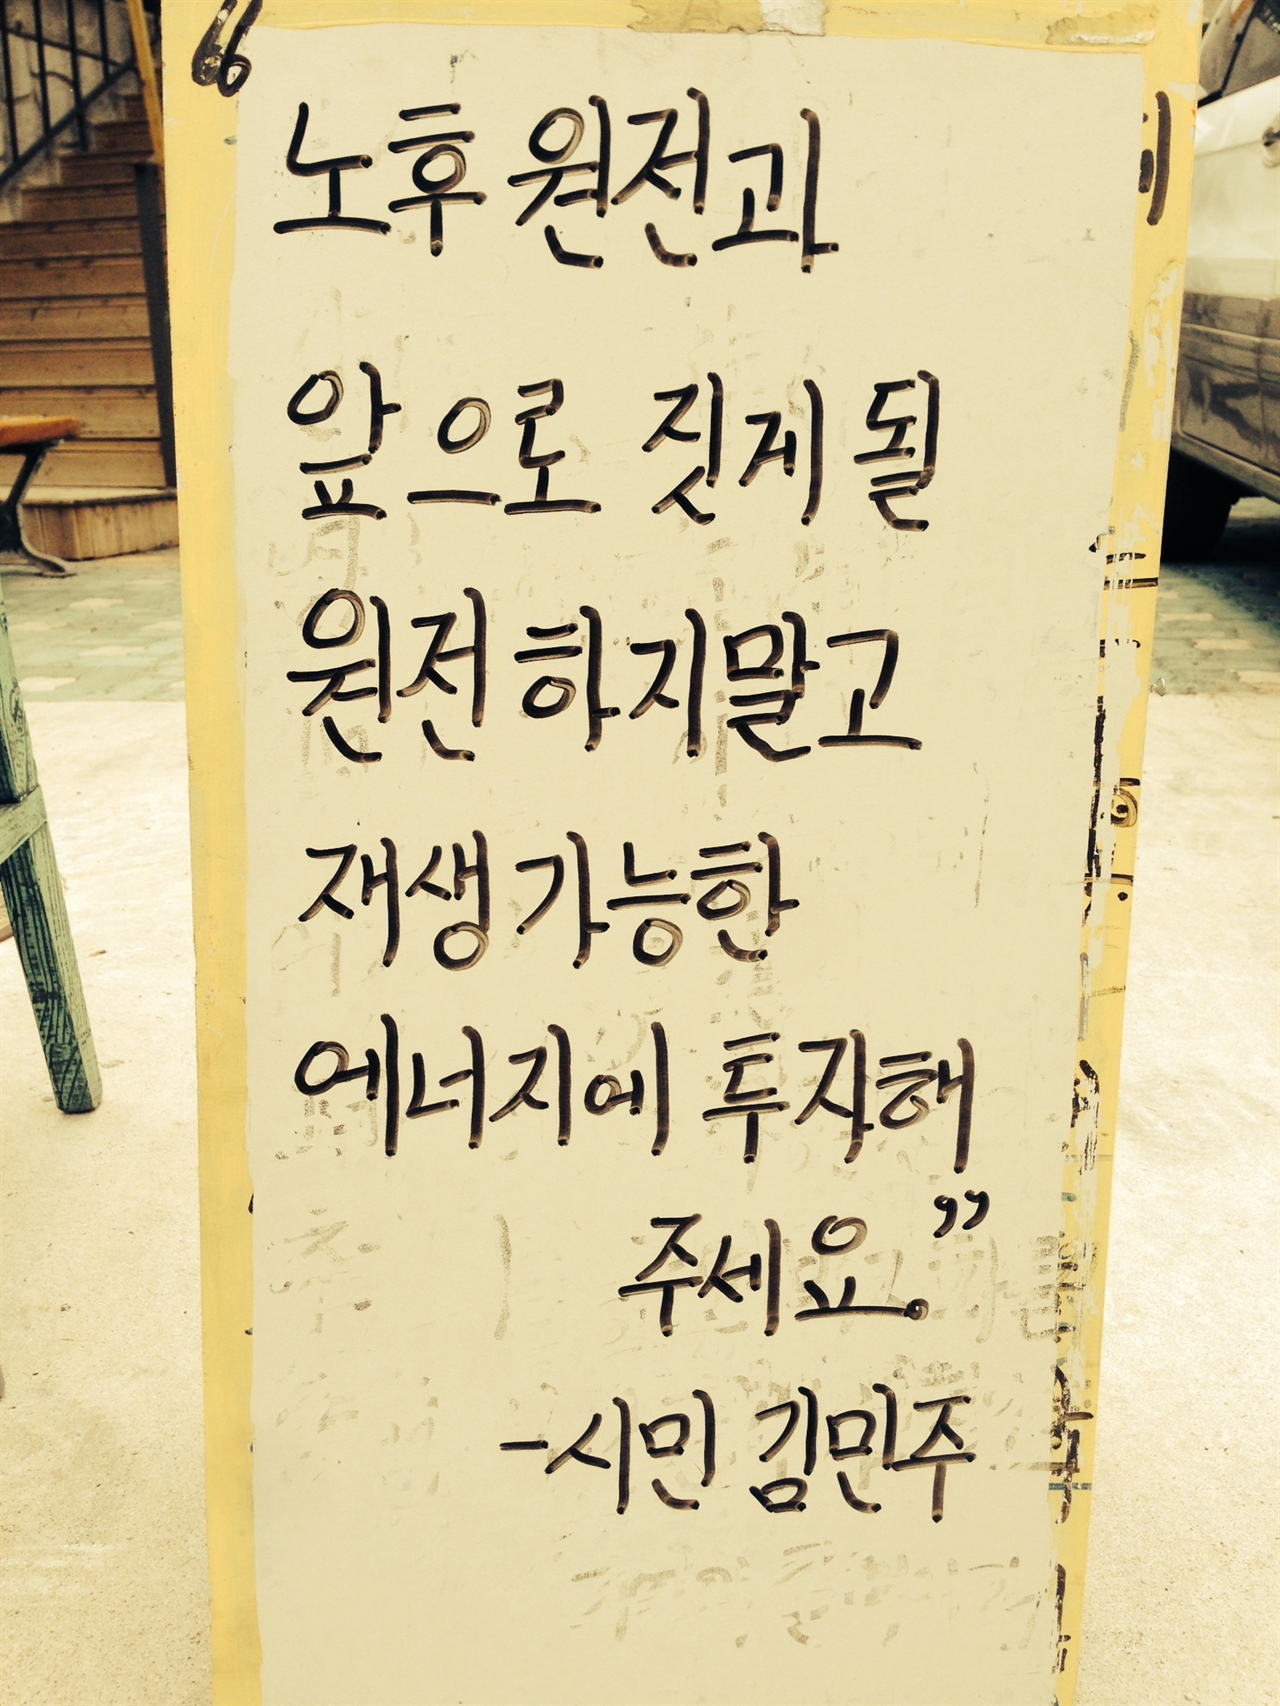 기억의 탈핵의자에 시민 김민주님께서 동참하며 방명록에 써 놓은 글. 